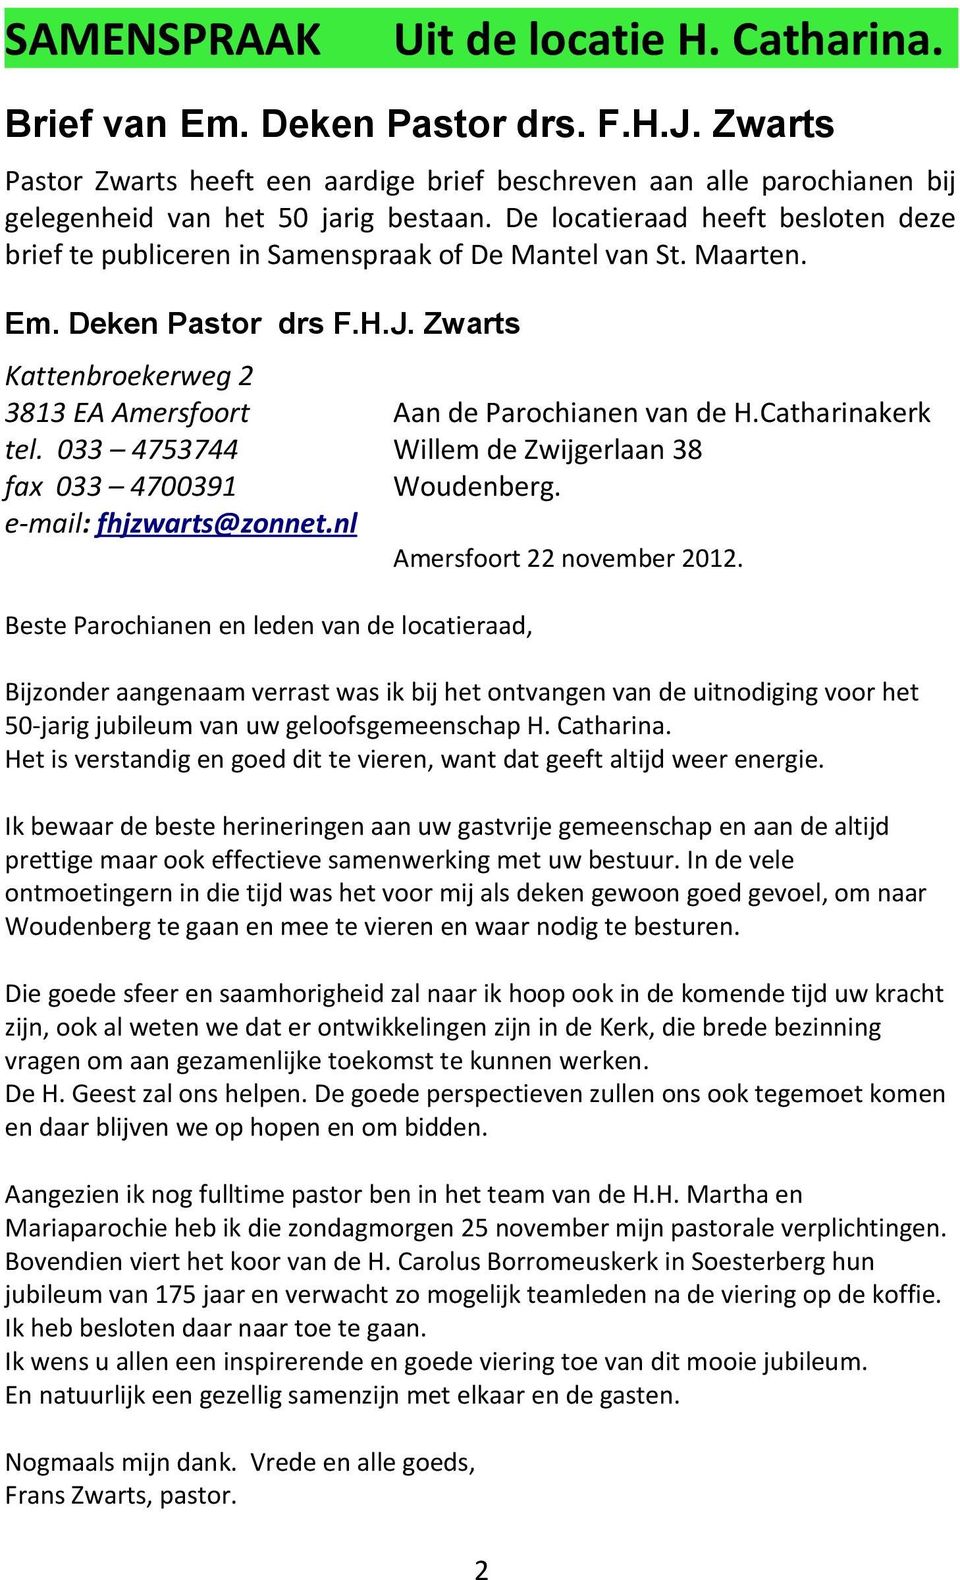 Zwarts Kattenbroekerweg 2 3813 EA Amersfoort Aan de Parochianen van de H.Catharinakerk tel. 033 4753744 Willem de Zwijgerlaan 38 fax 033 4700391 Woudenberg. e-mail: fhjzwarts@zonnet.